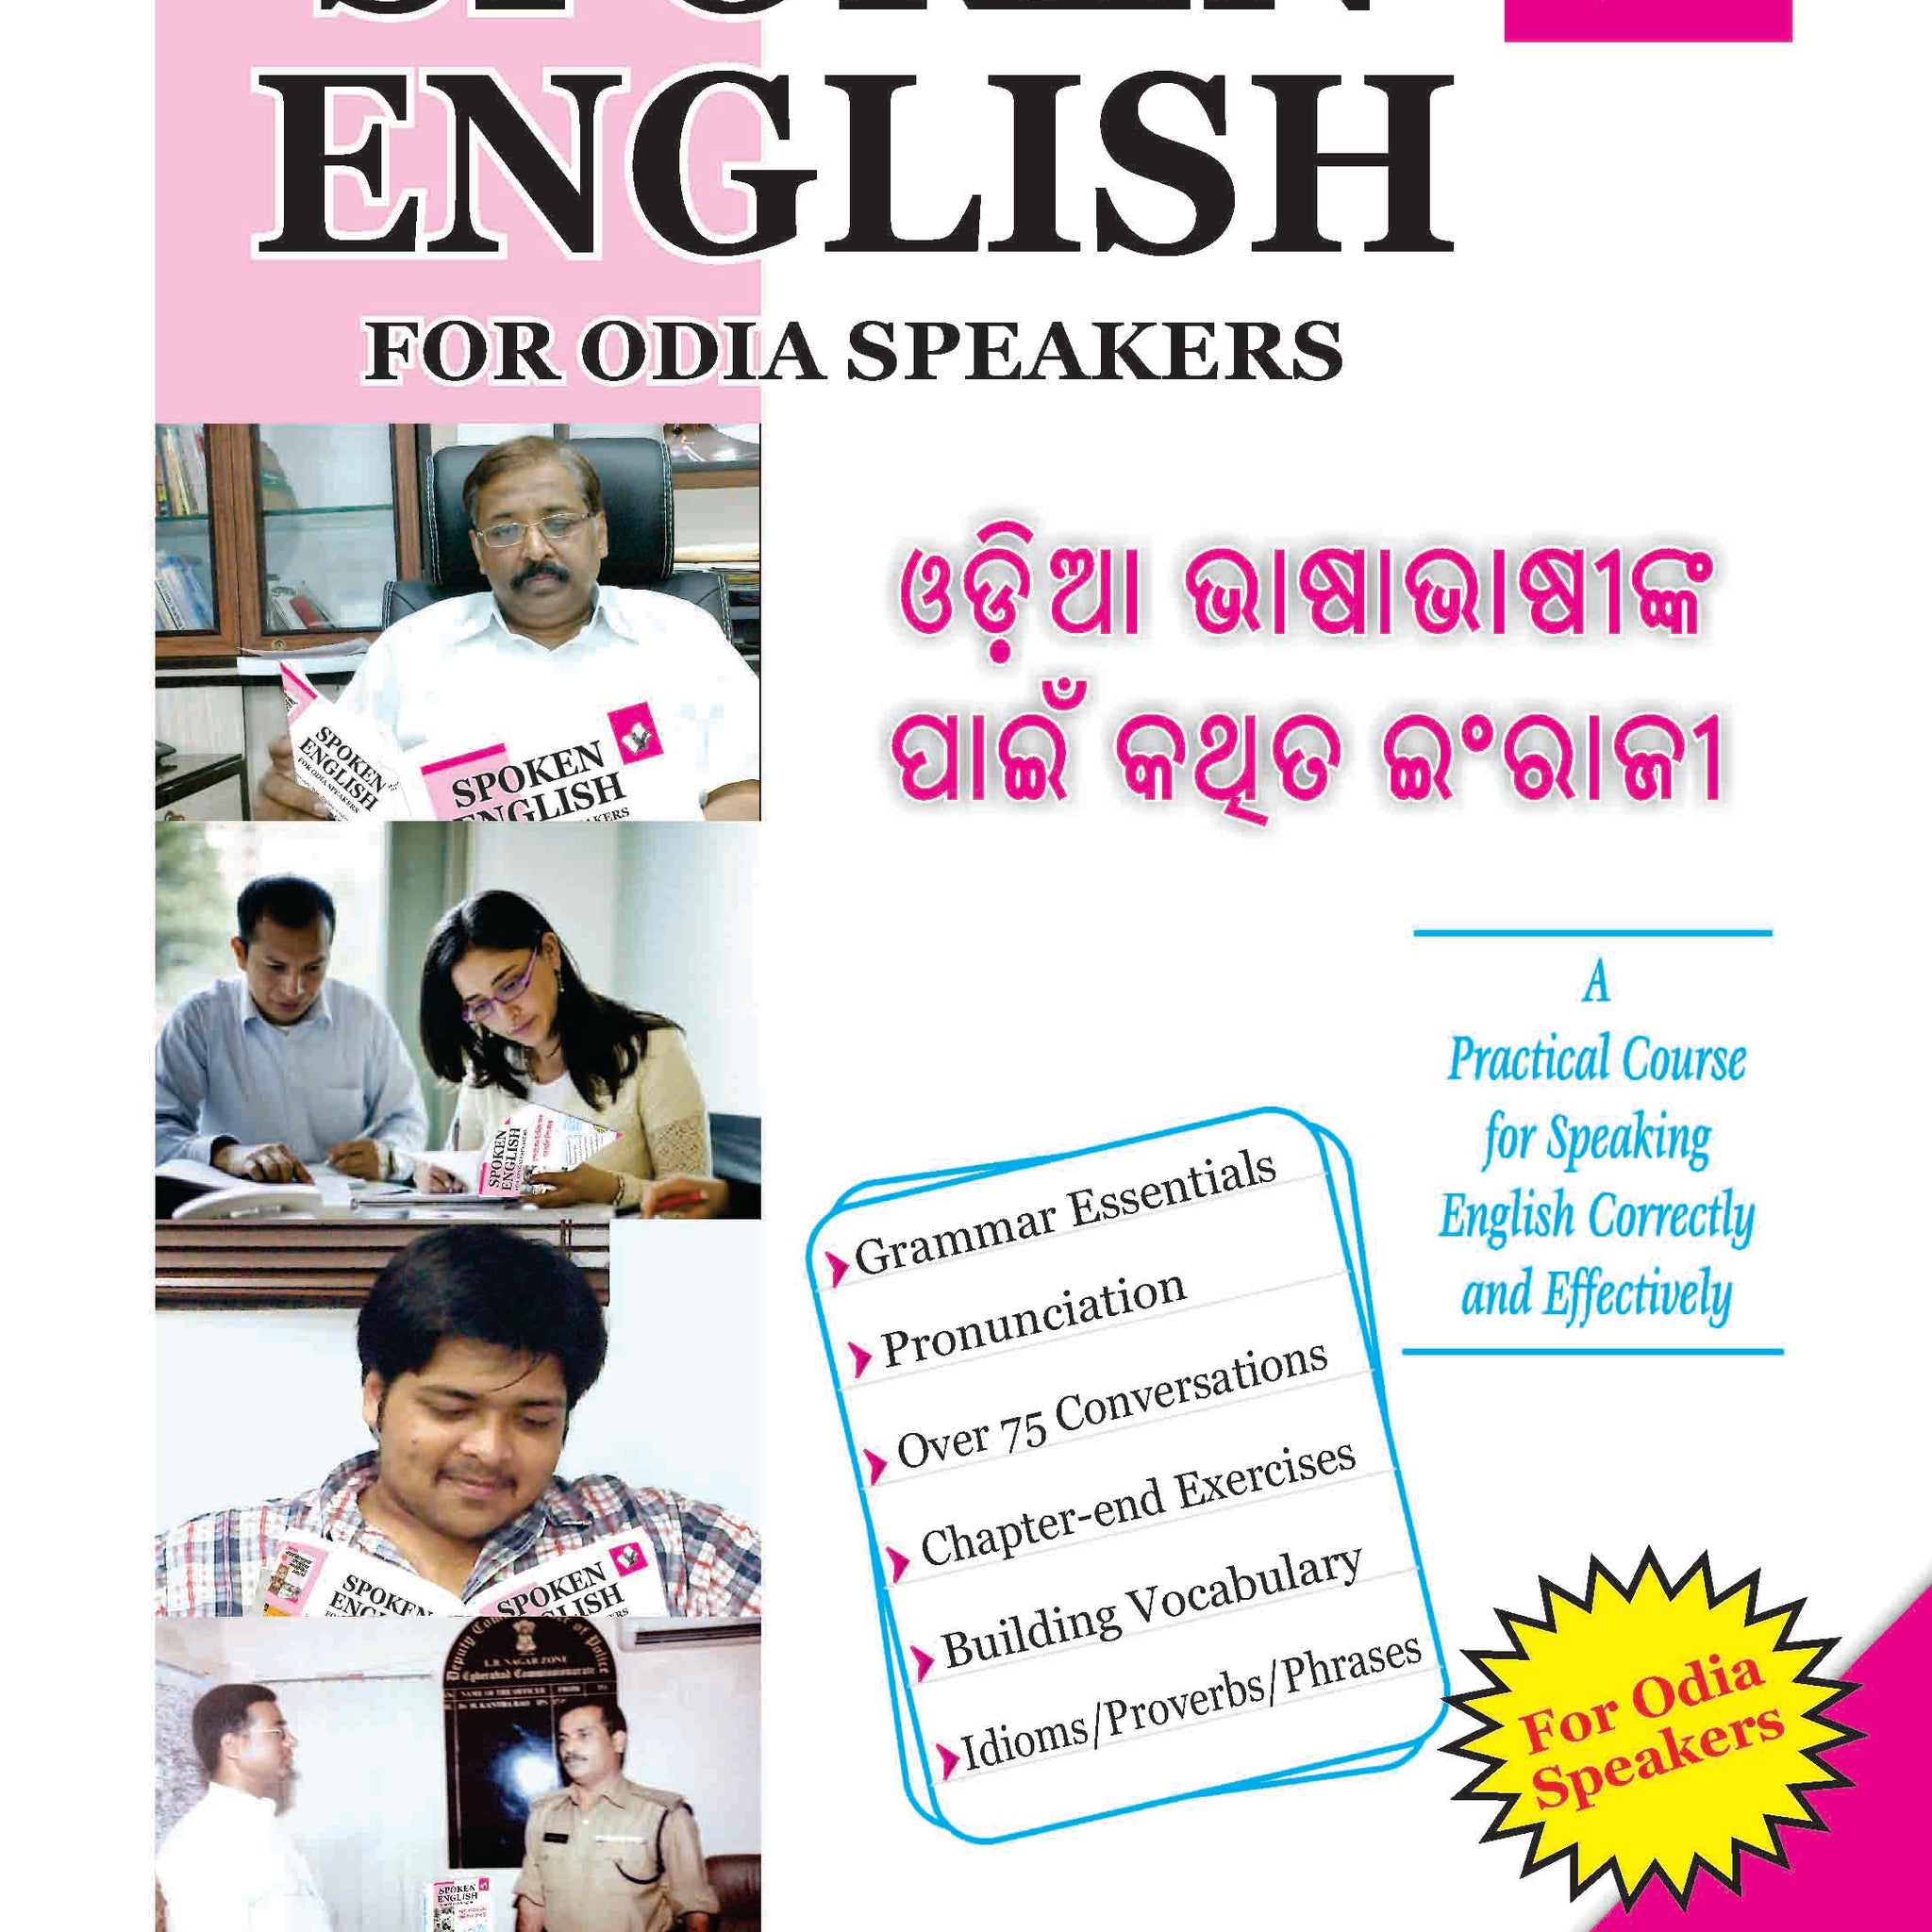 Spoken English For Odia Speakers